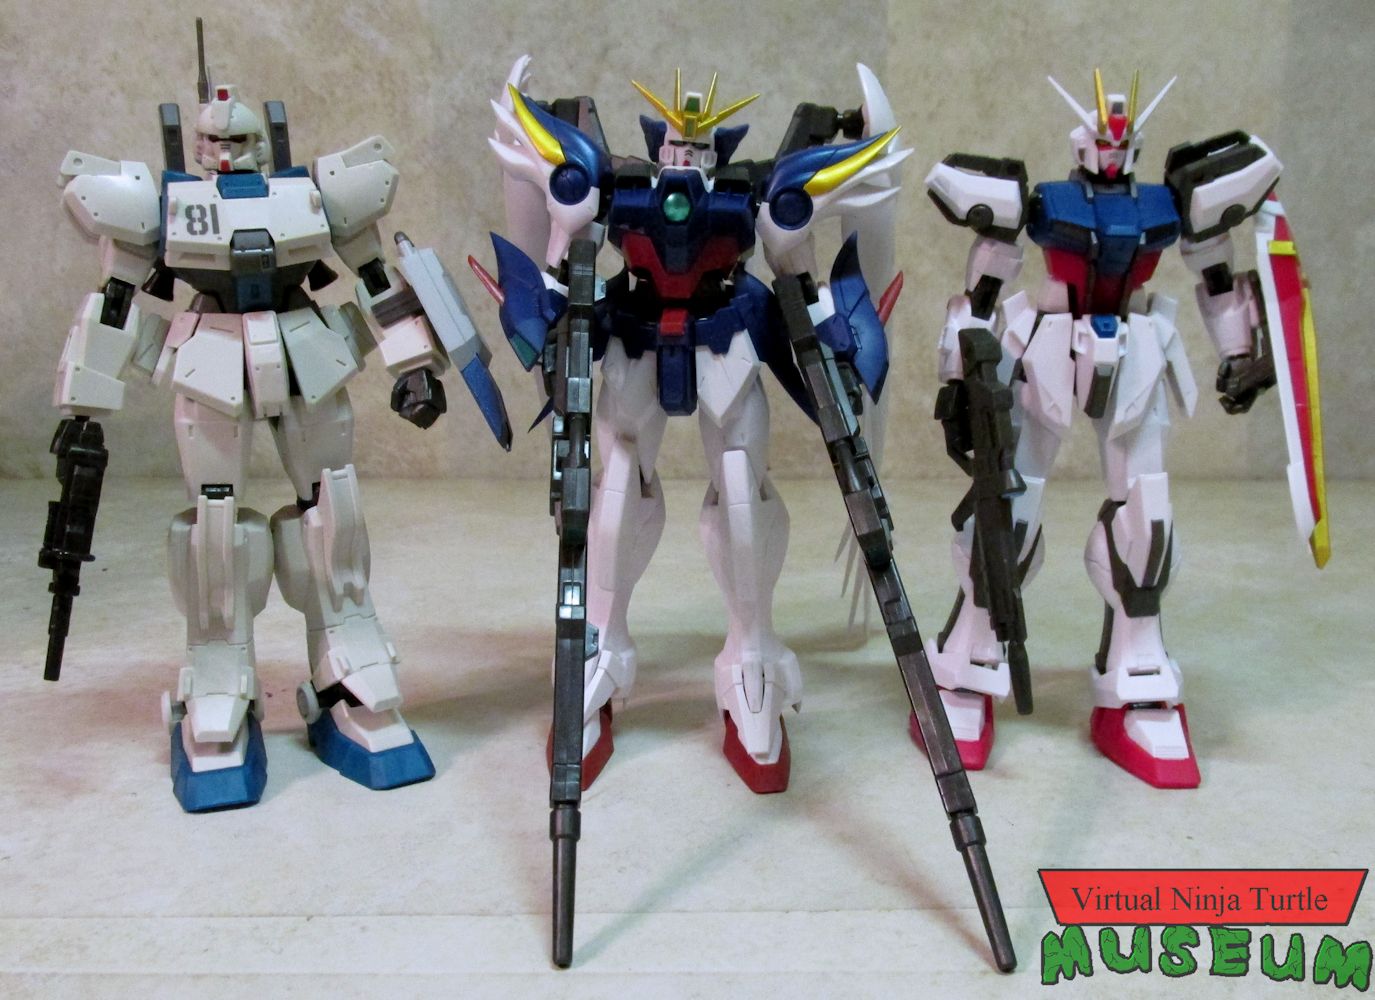 Wave three: Strike Gundam, Wing Zero and Gundam EZ